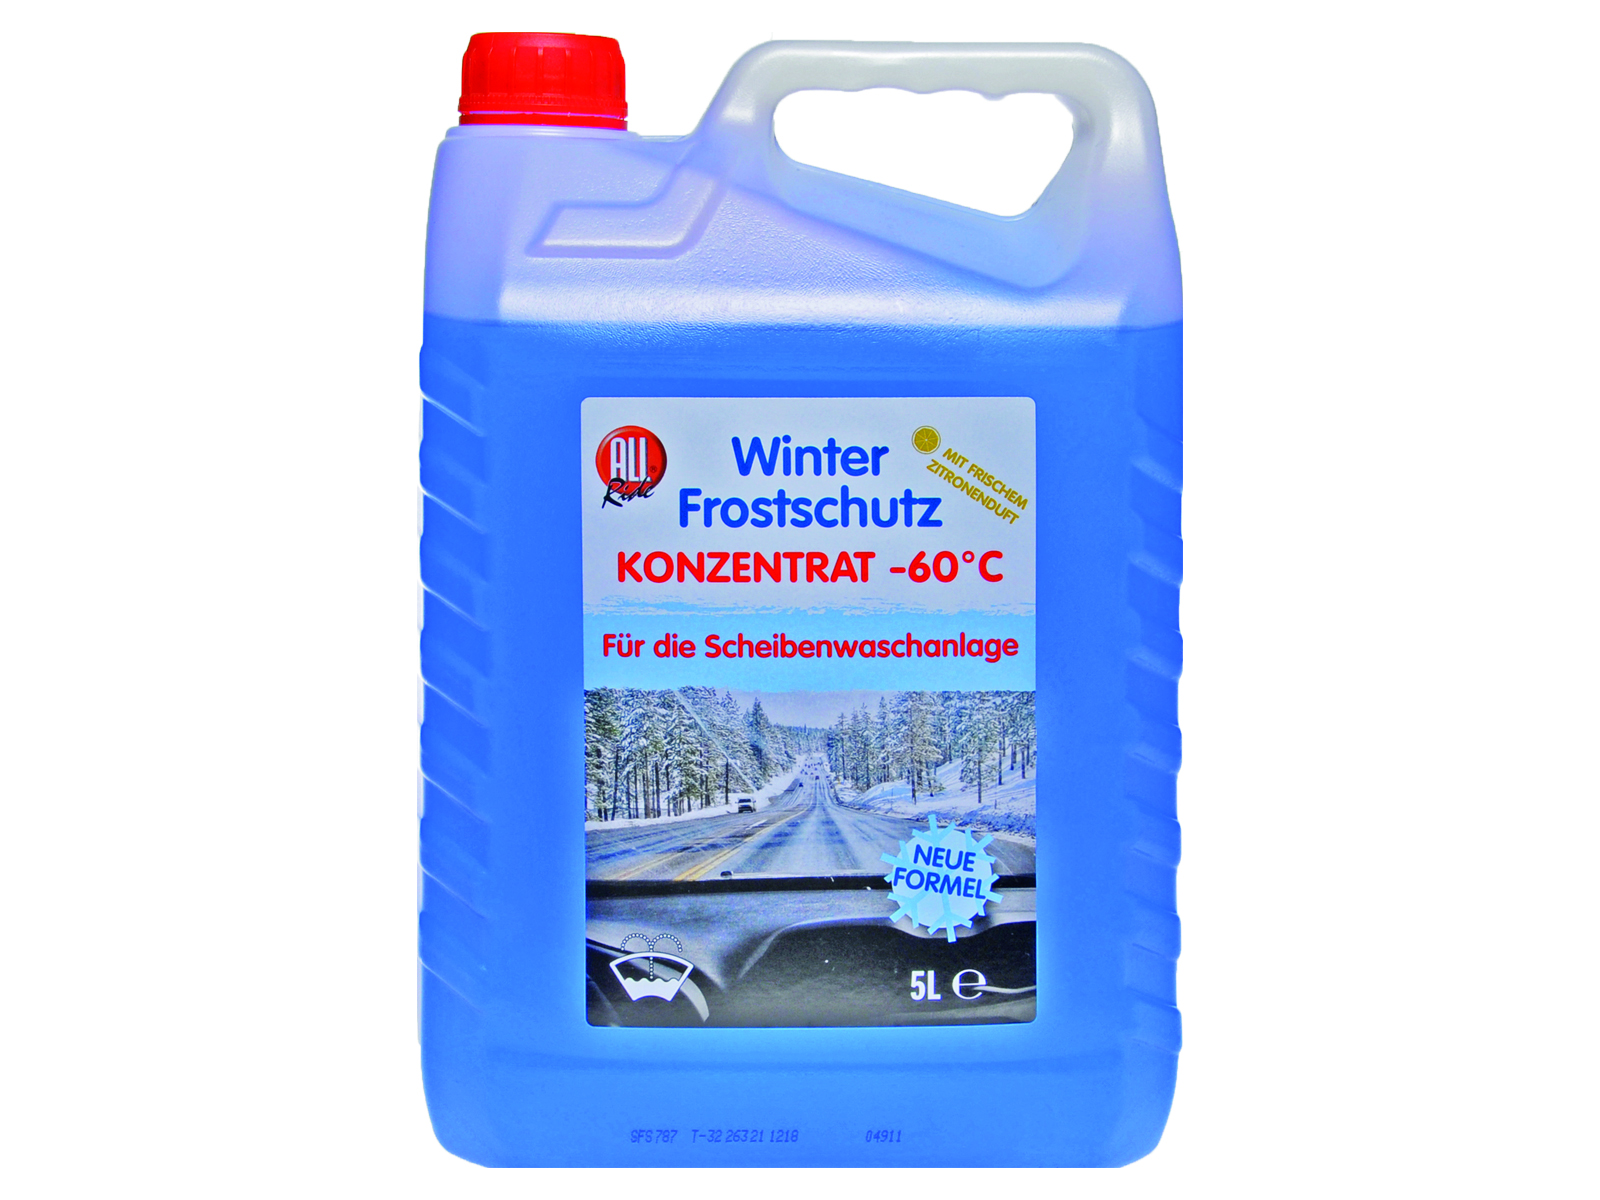 lkw-teile24, Scheibenfrostschutz Winter Konzentrat 60 Liter - 60 Grad. mit  Zitrusduft (Einweggebinde) - LKW Ersatzteile beim Experten bestellen